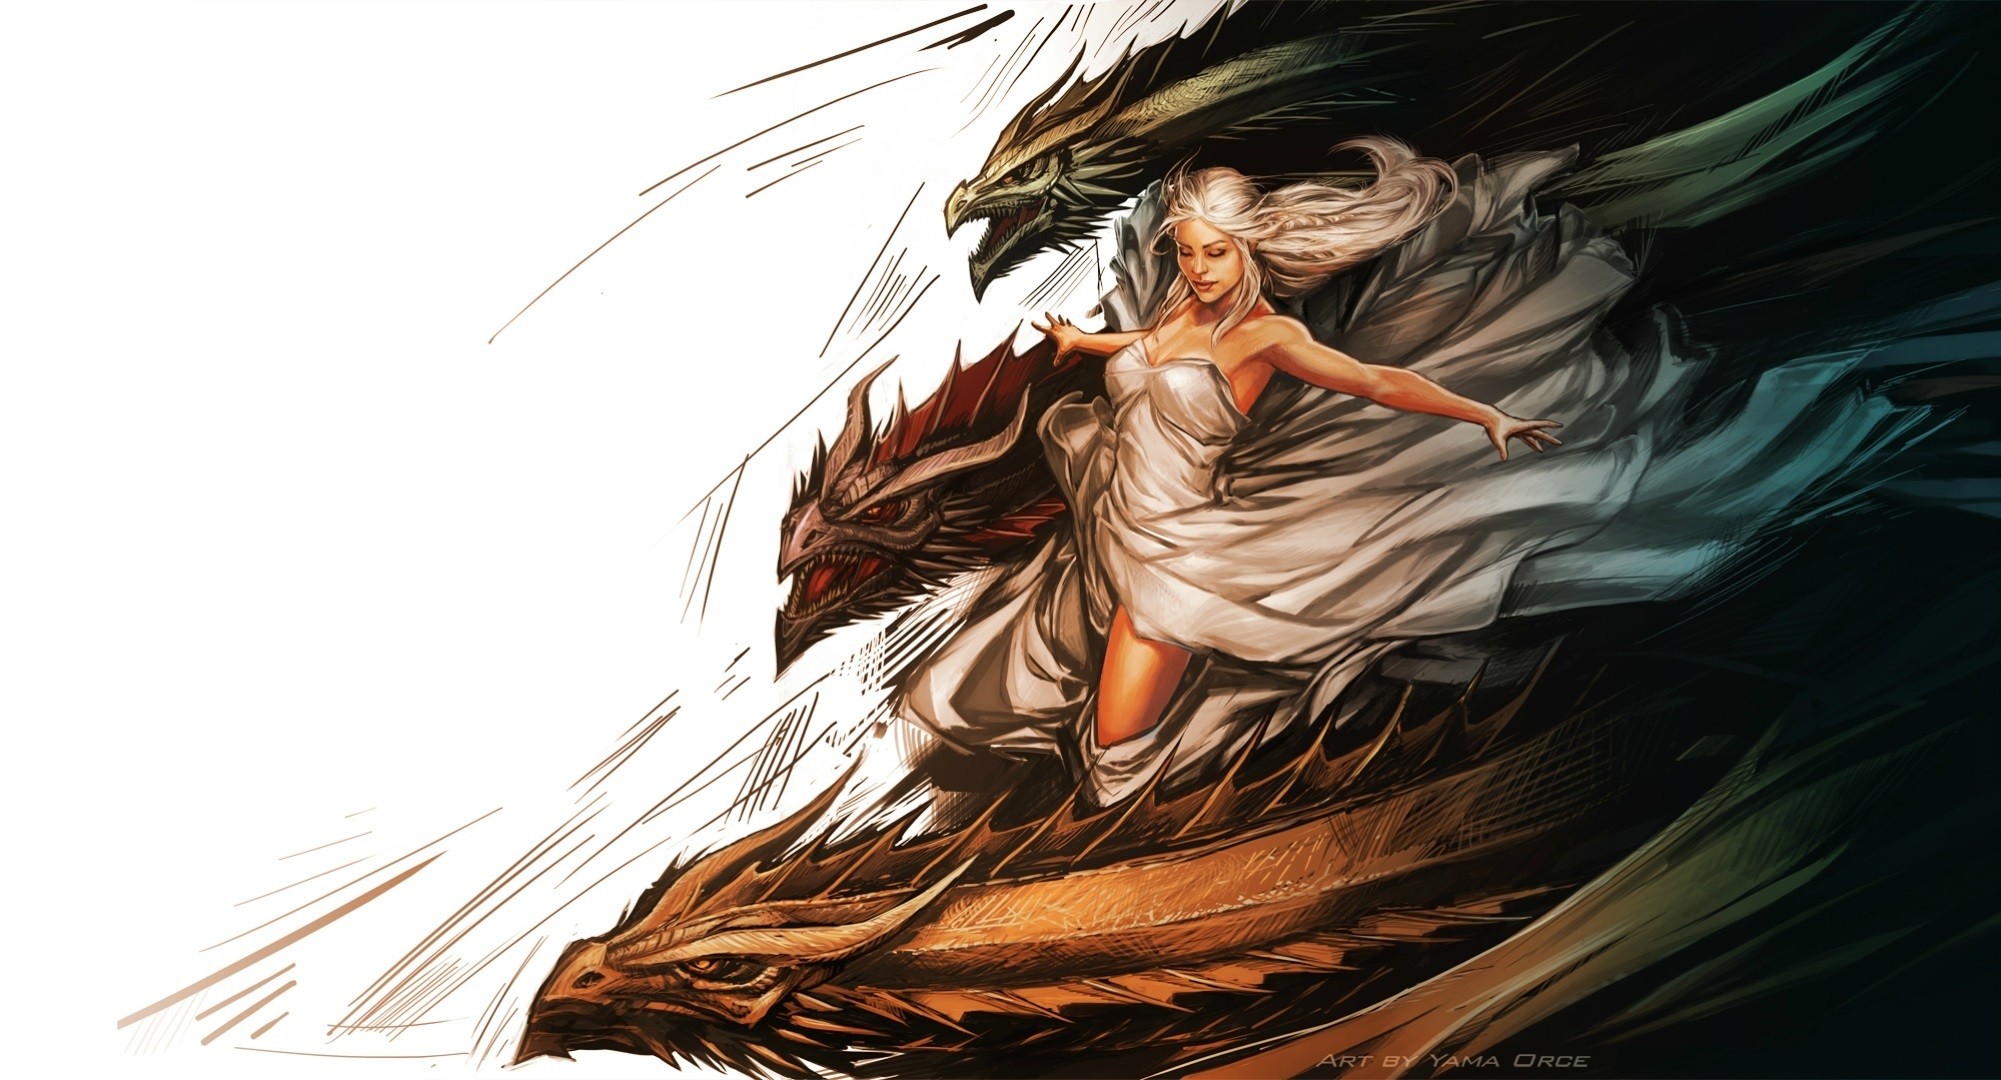 2001x1080 Game Of Thrones Daenerys Targaryen Painting Art Dragons Dragon Fantasy  Wallpaper At Fantasy Wallpapers